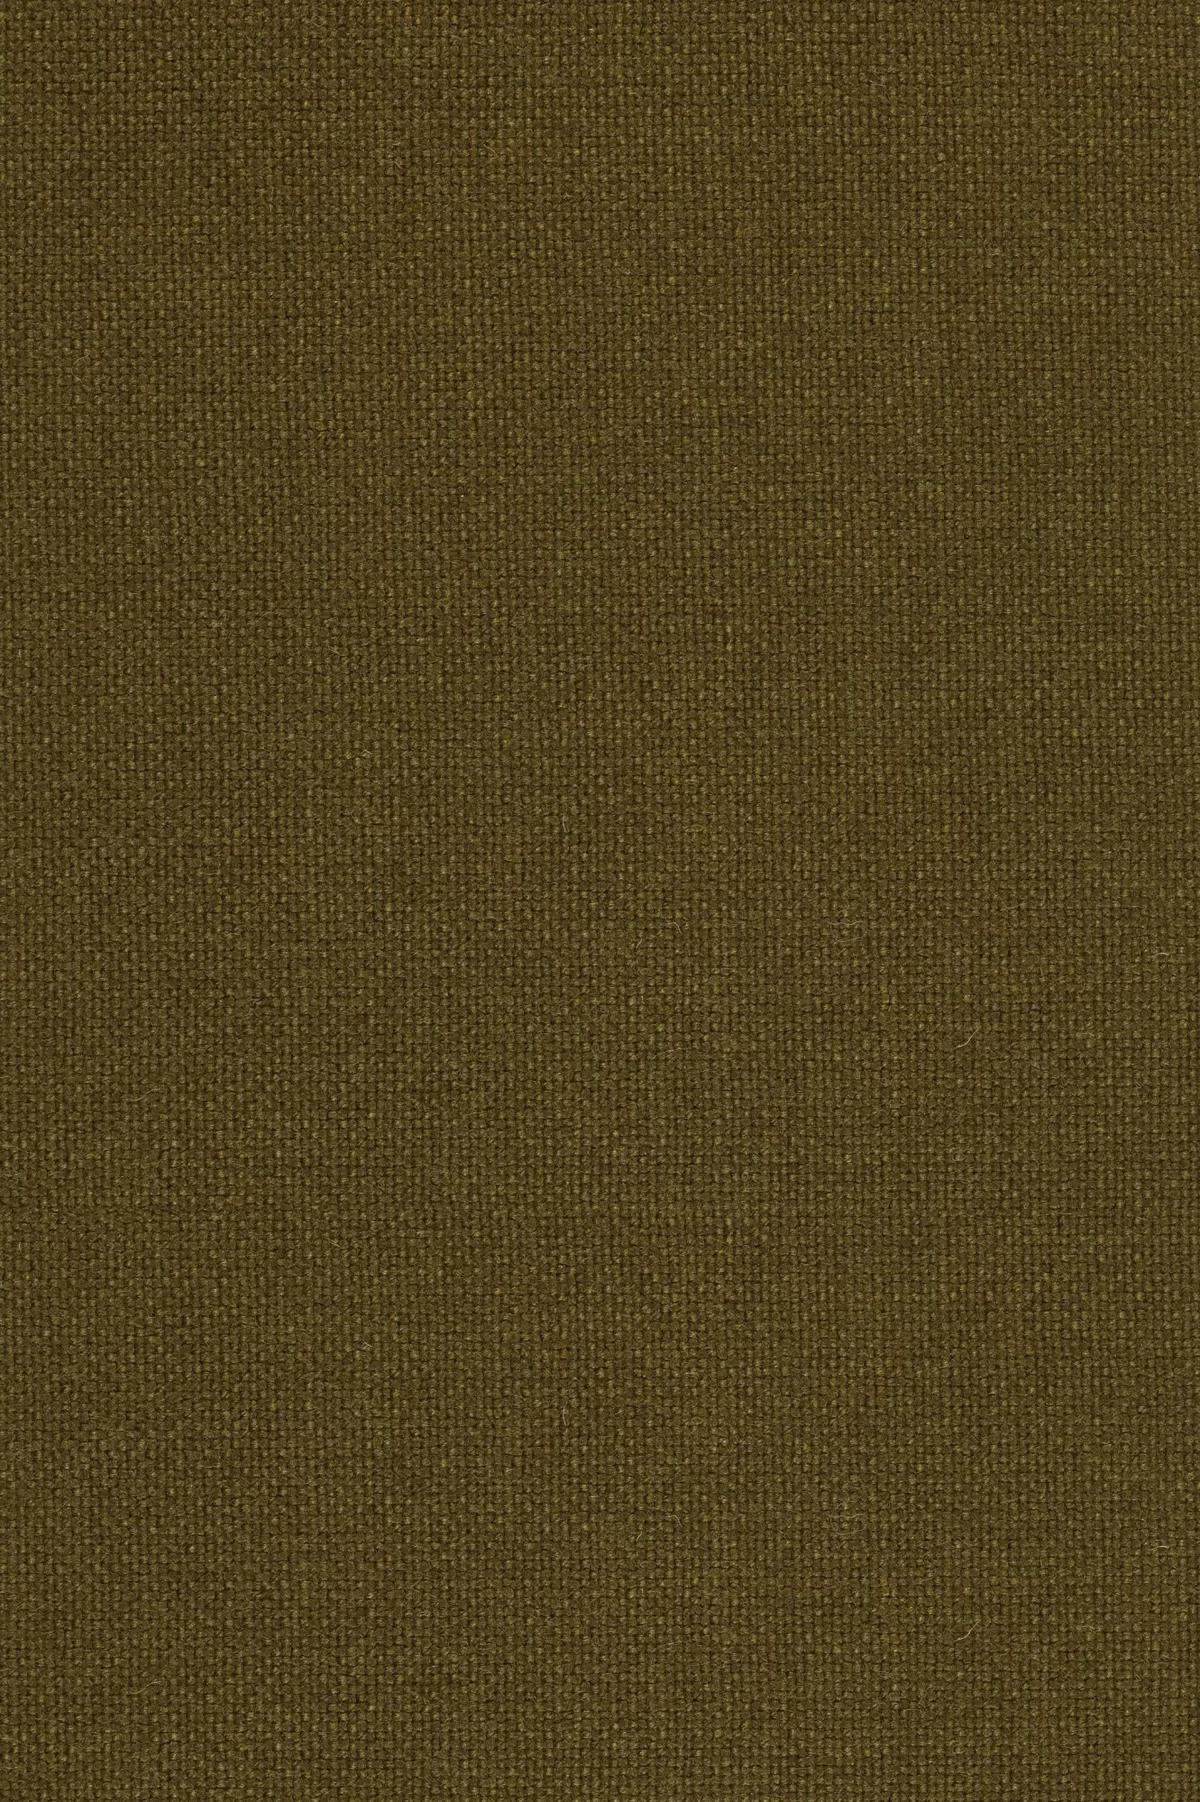 Fabric sample Hallingdal 65 350 brown